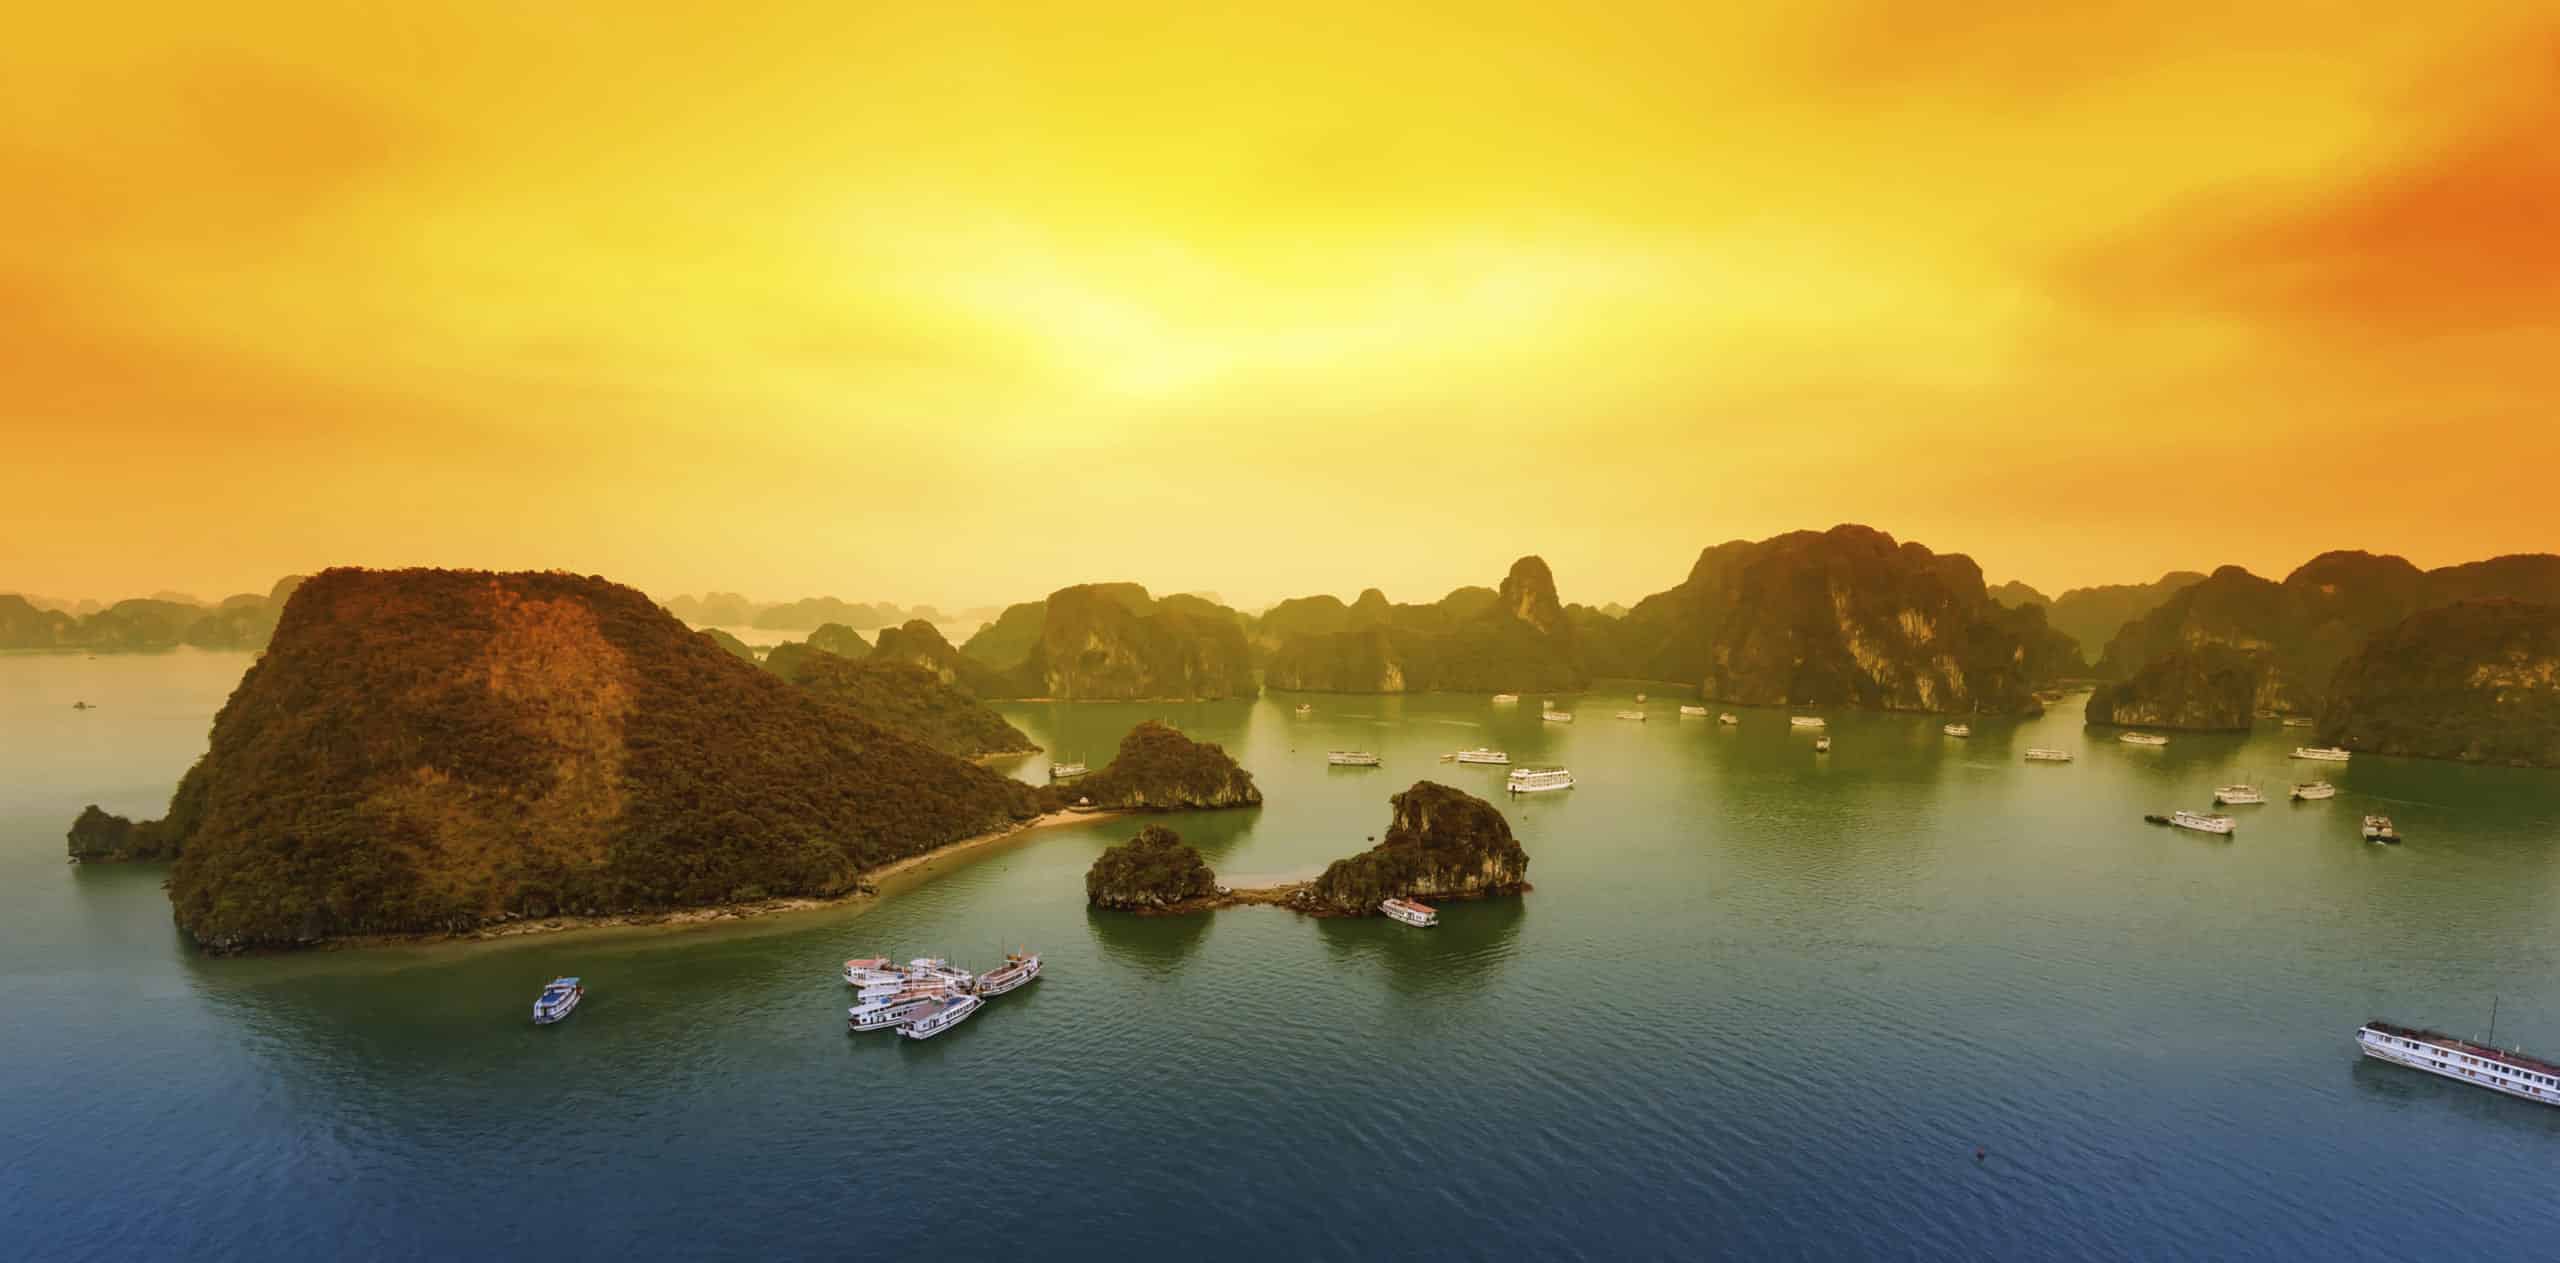 The beauty of Ha Long Bay